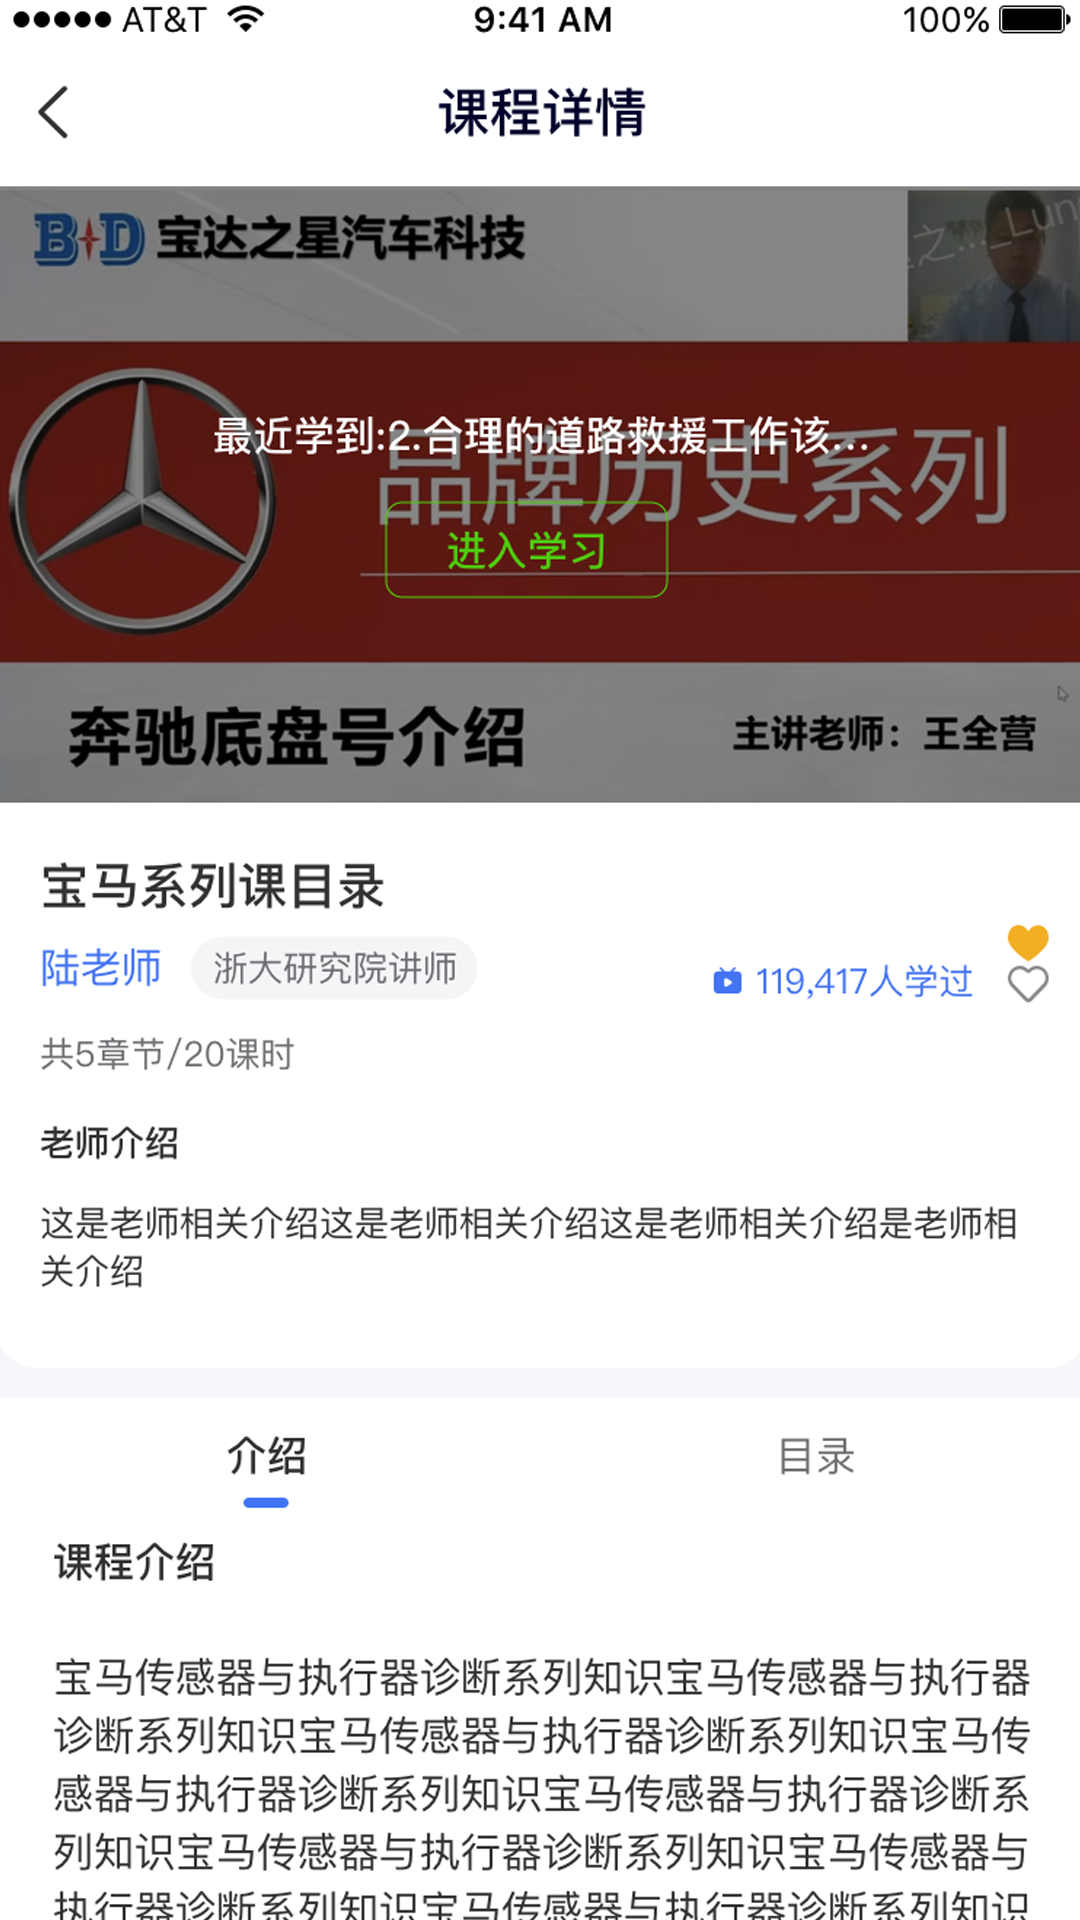 宝达之星app下载,宝达之星汽车维修学习app官方版 v1.0.0